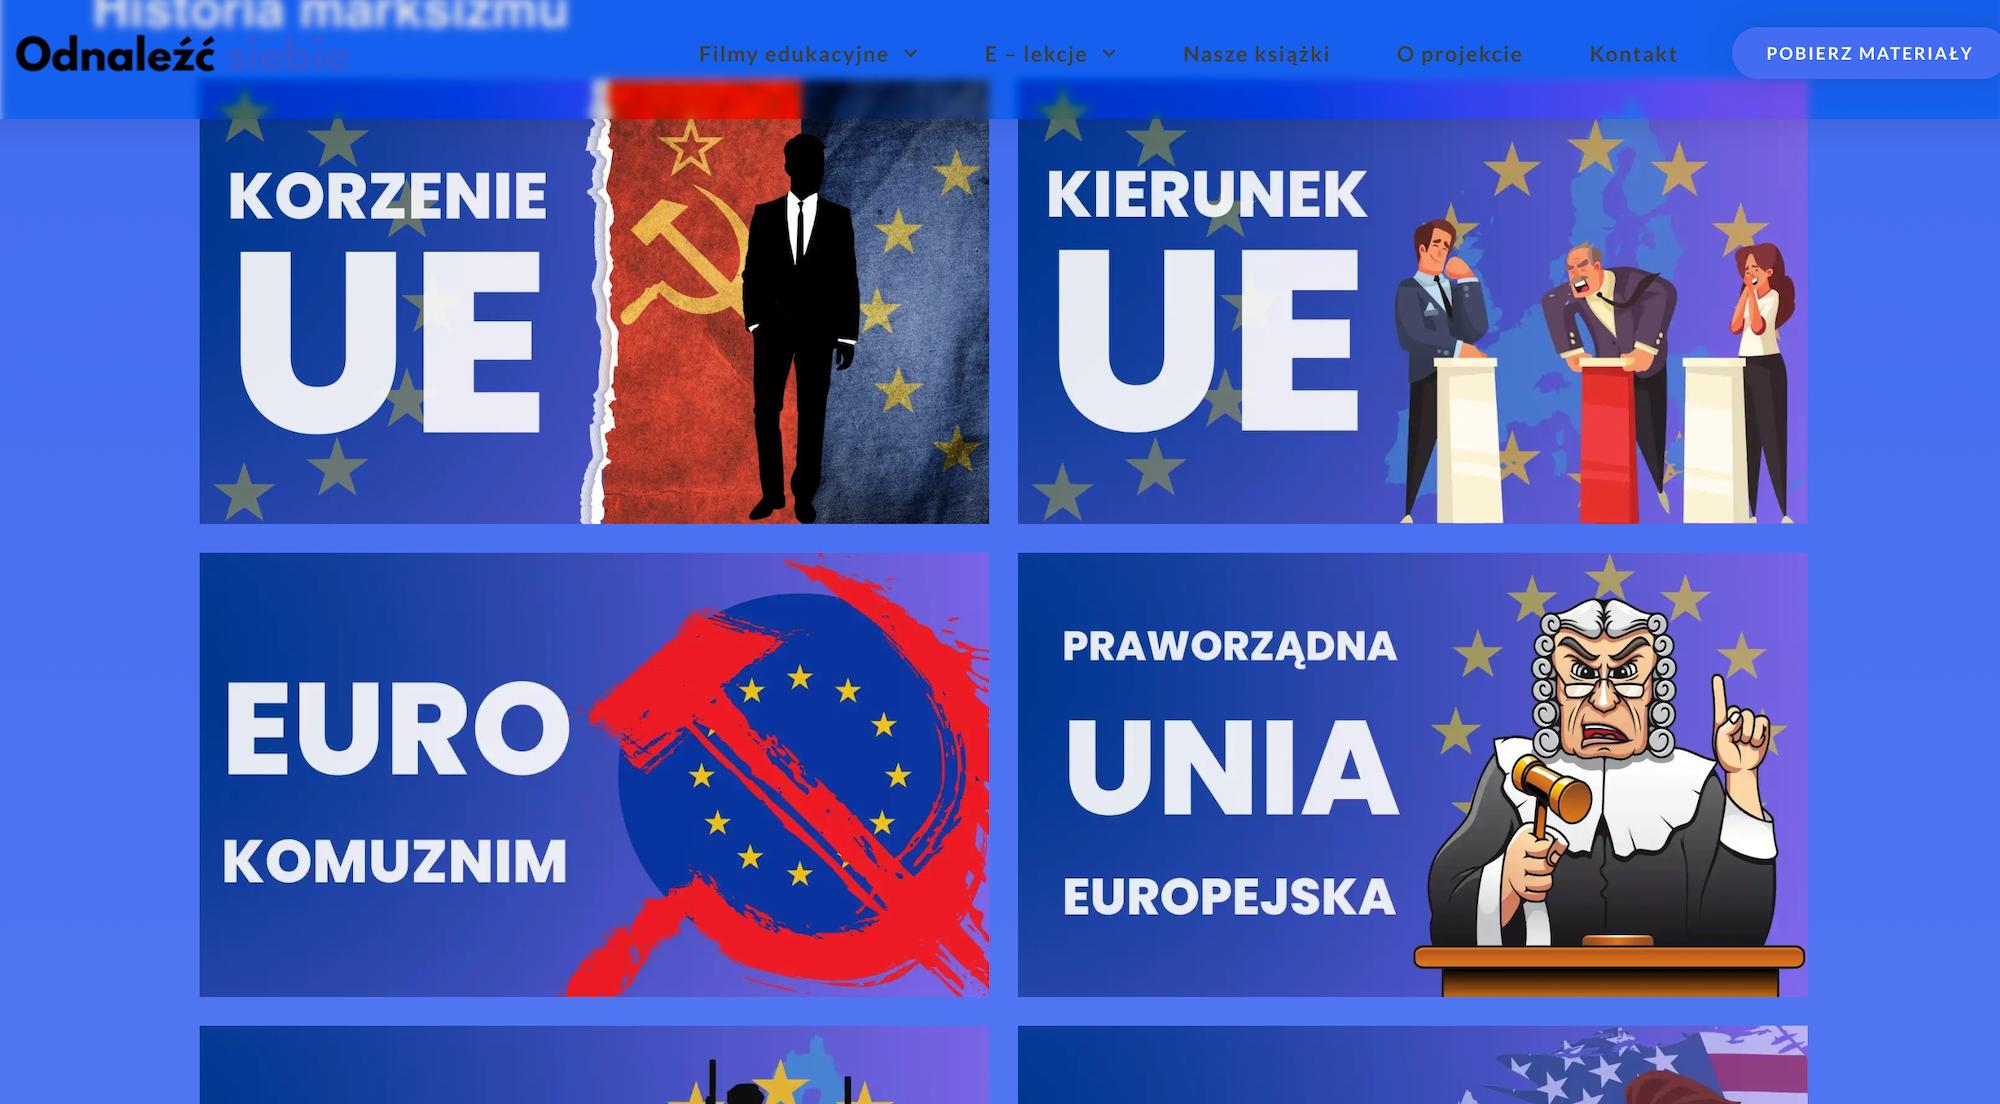 Zrzut ekranu ze strony projektu Odnaleźć Siebie pokazujący materiały o Unii Europejskiej jako sile marksistowskiej